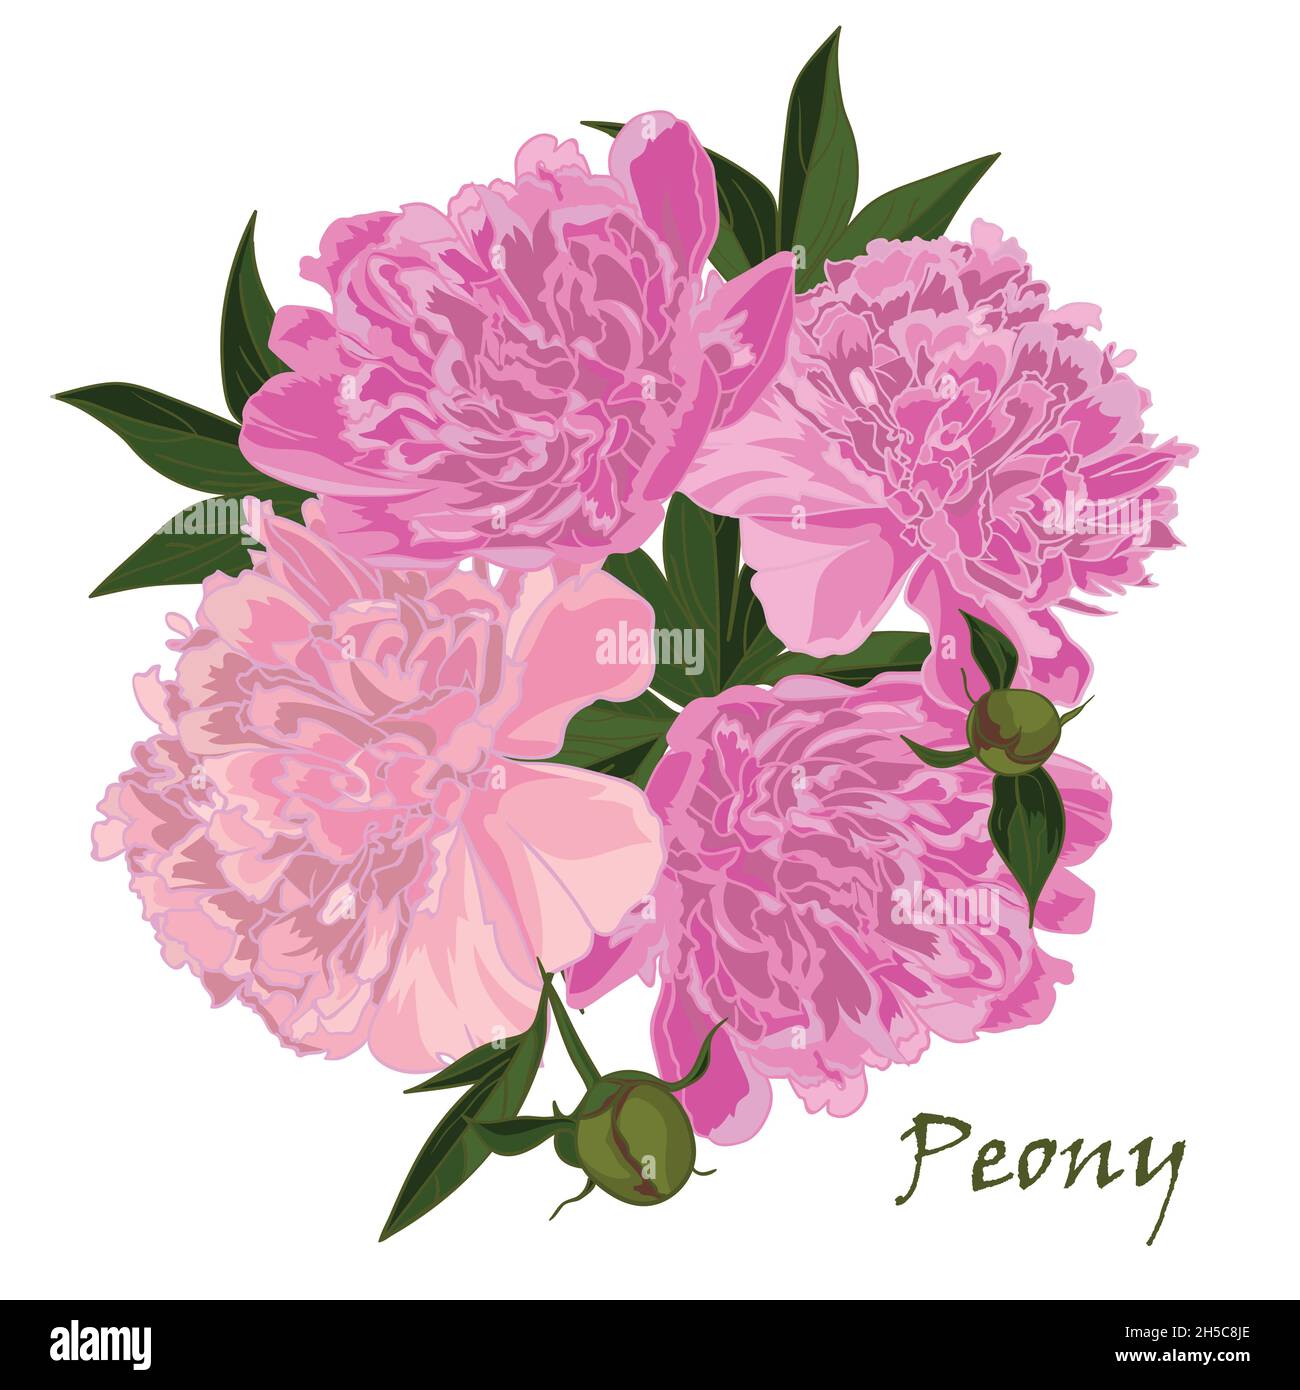 Fiore di Peony in stile realistico disegnato a mano Illustrazione Vettoriale